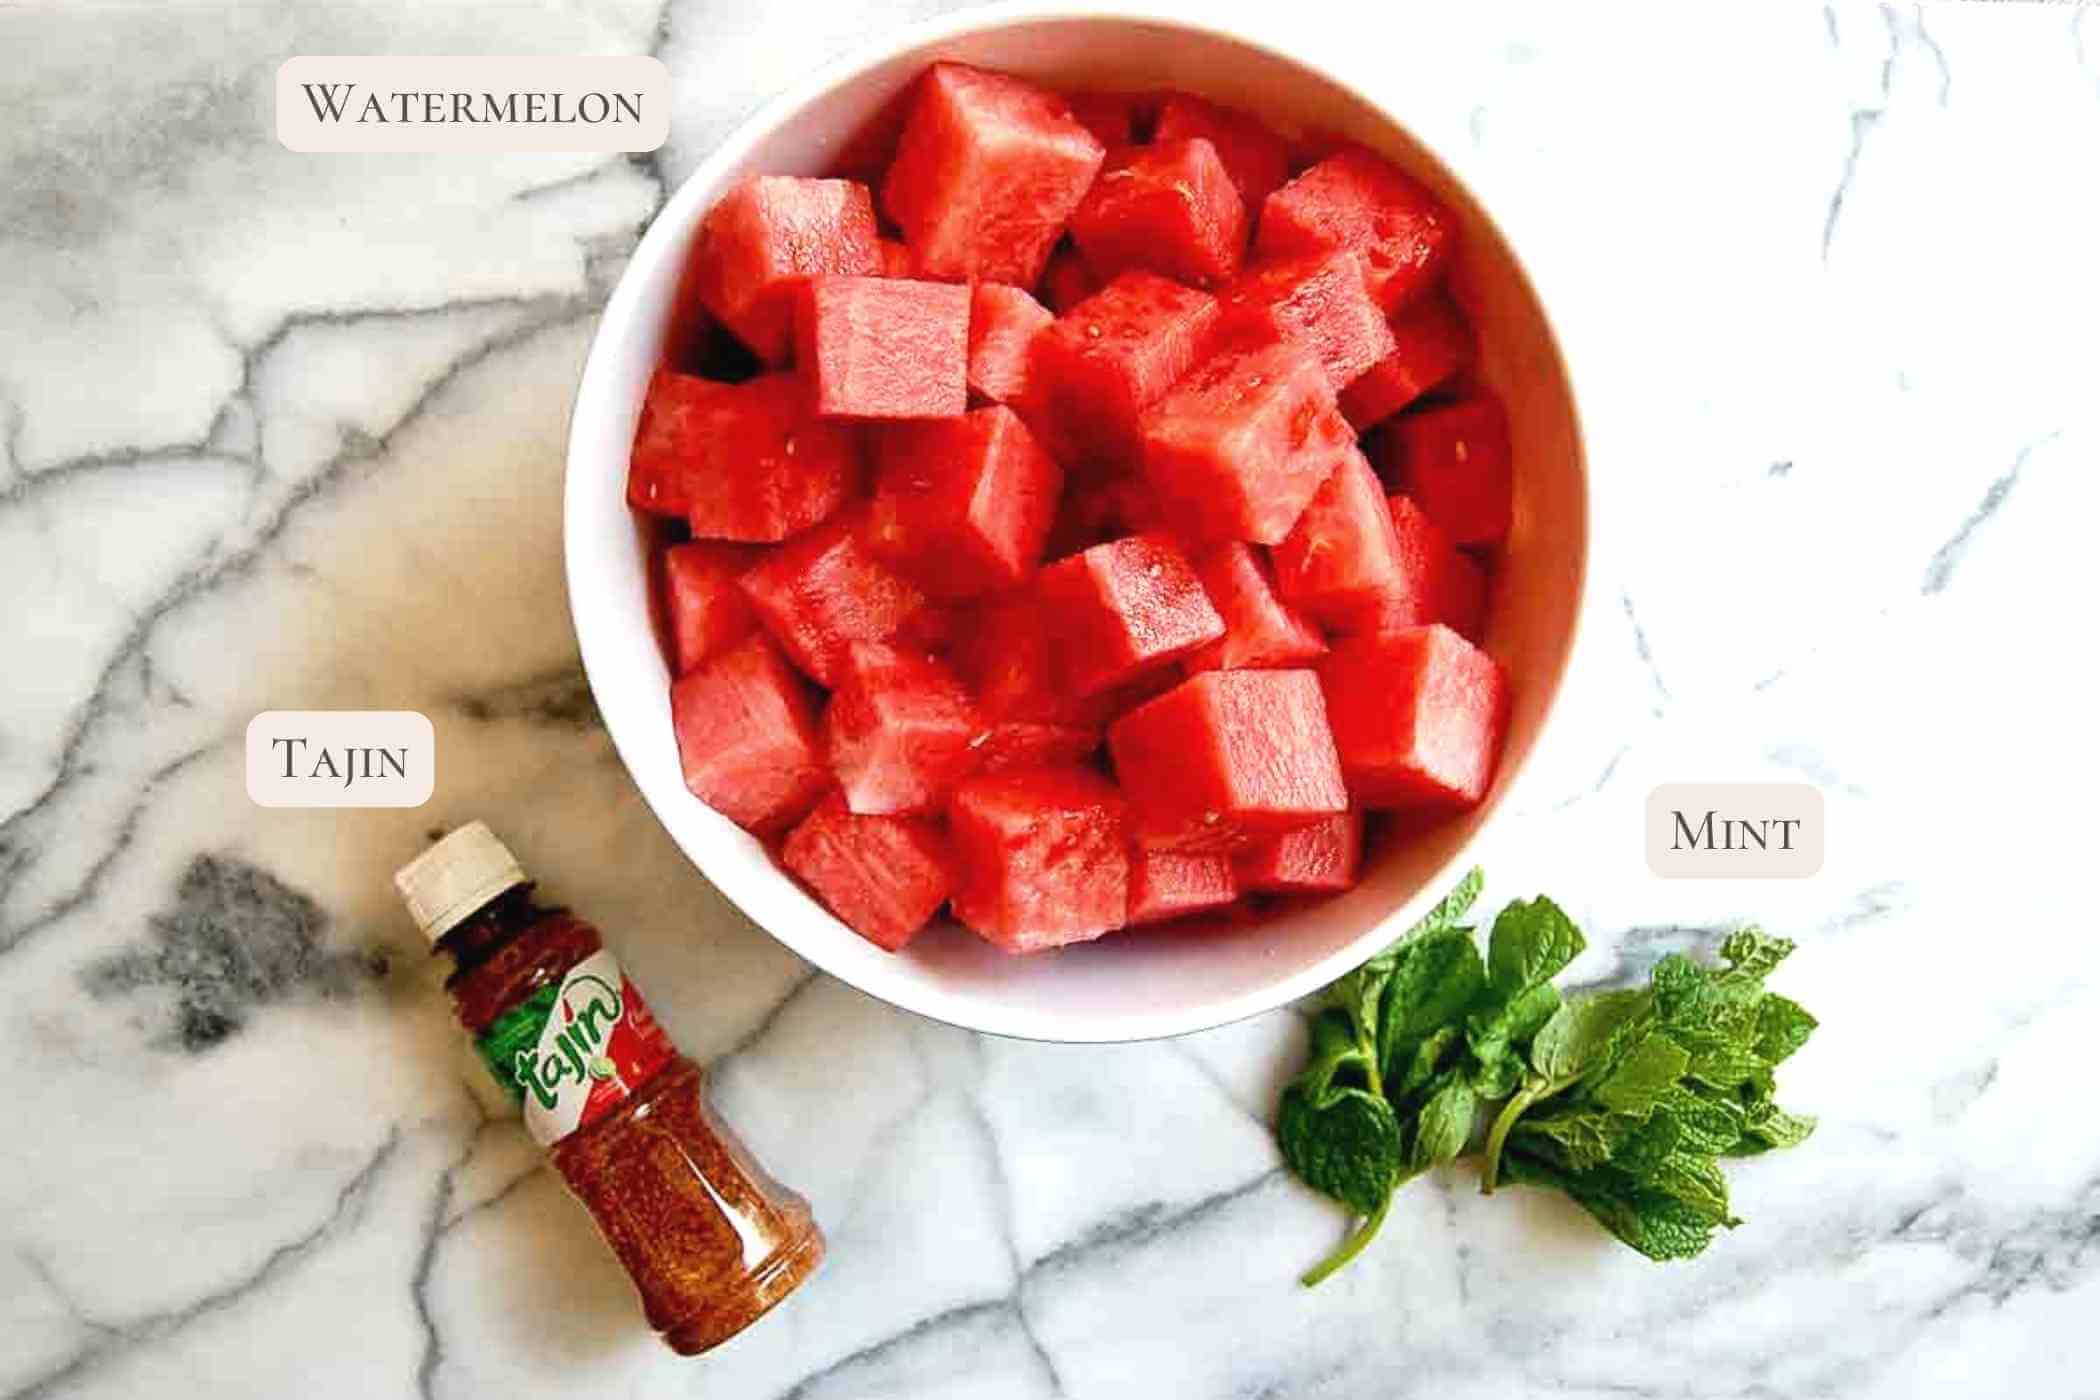 ingredients for tajin watermelon on cutting board.